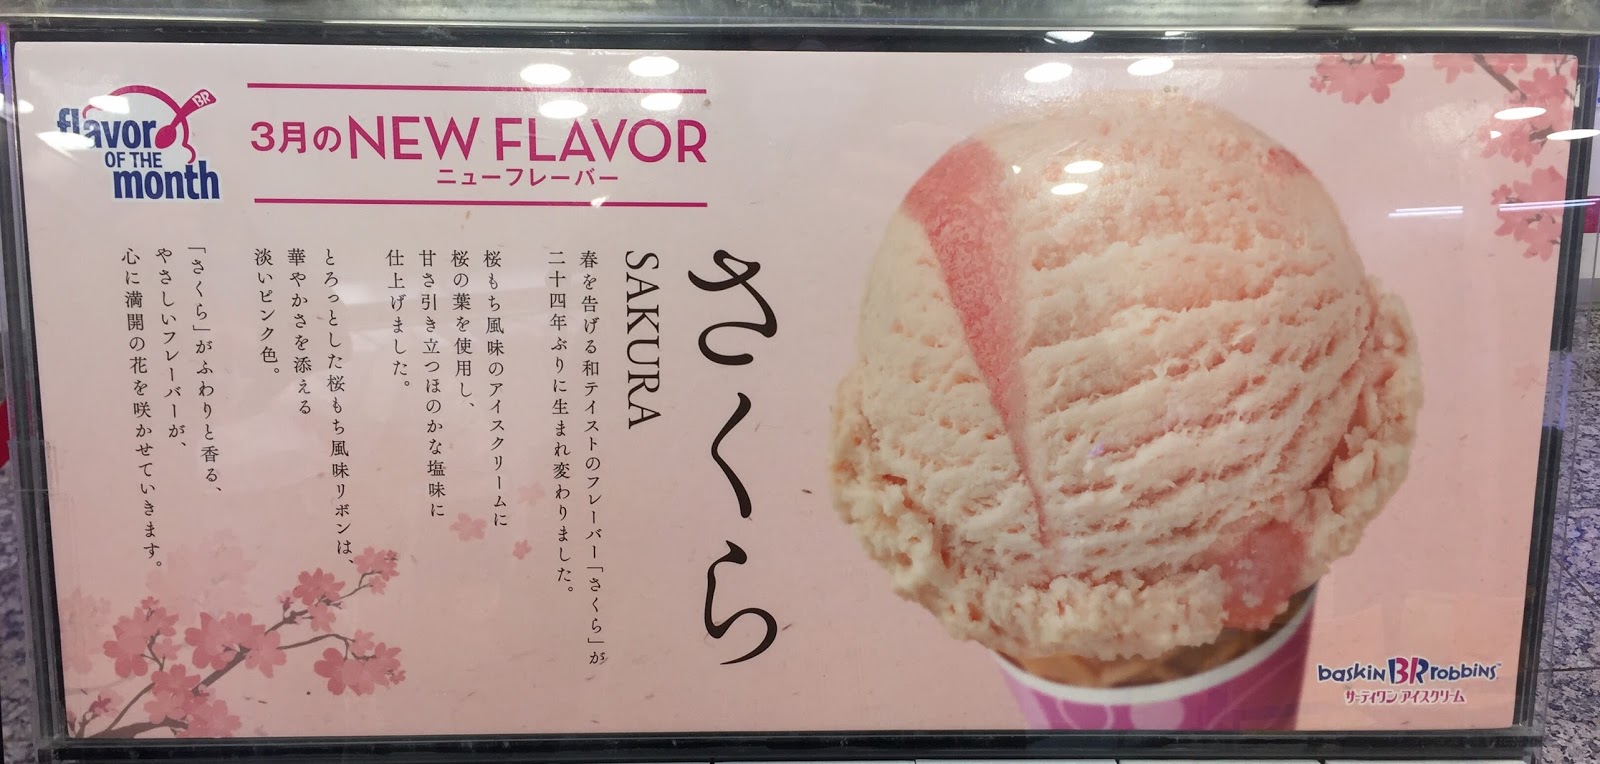 I M Made Of Sugar Chihiro S Food Blog Sakura Ice Cream From Baskin Robbins 31アイスのさくら アイスクリーム